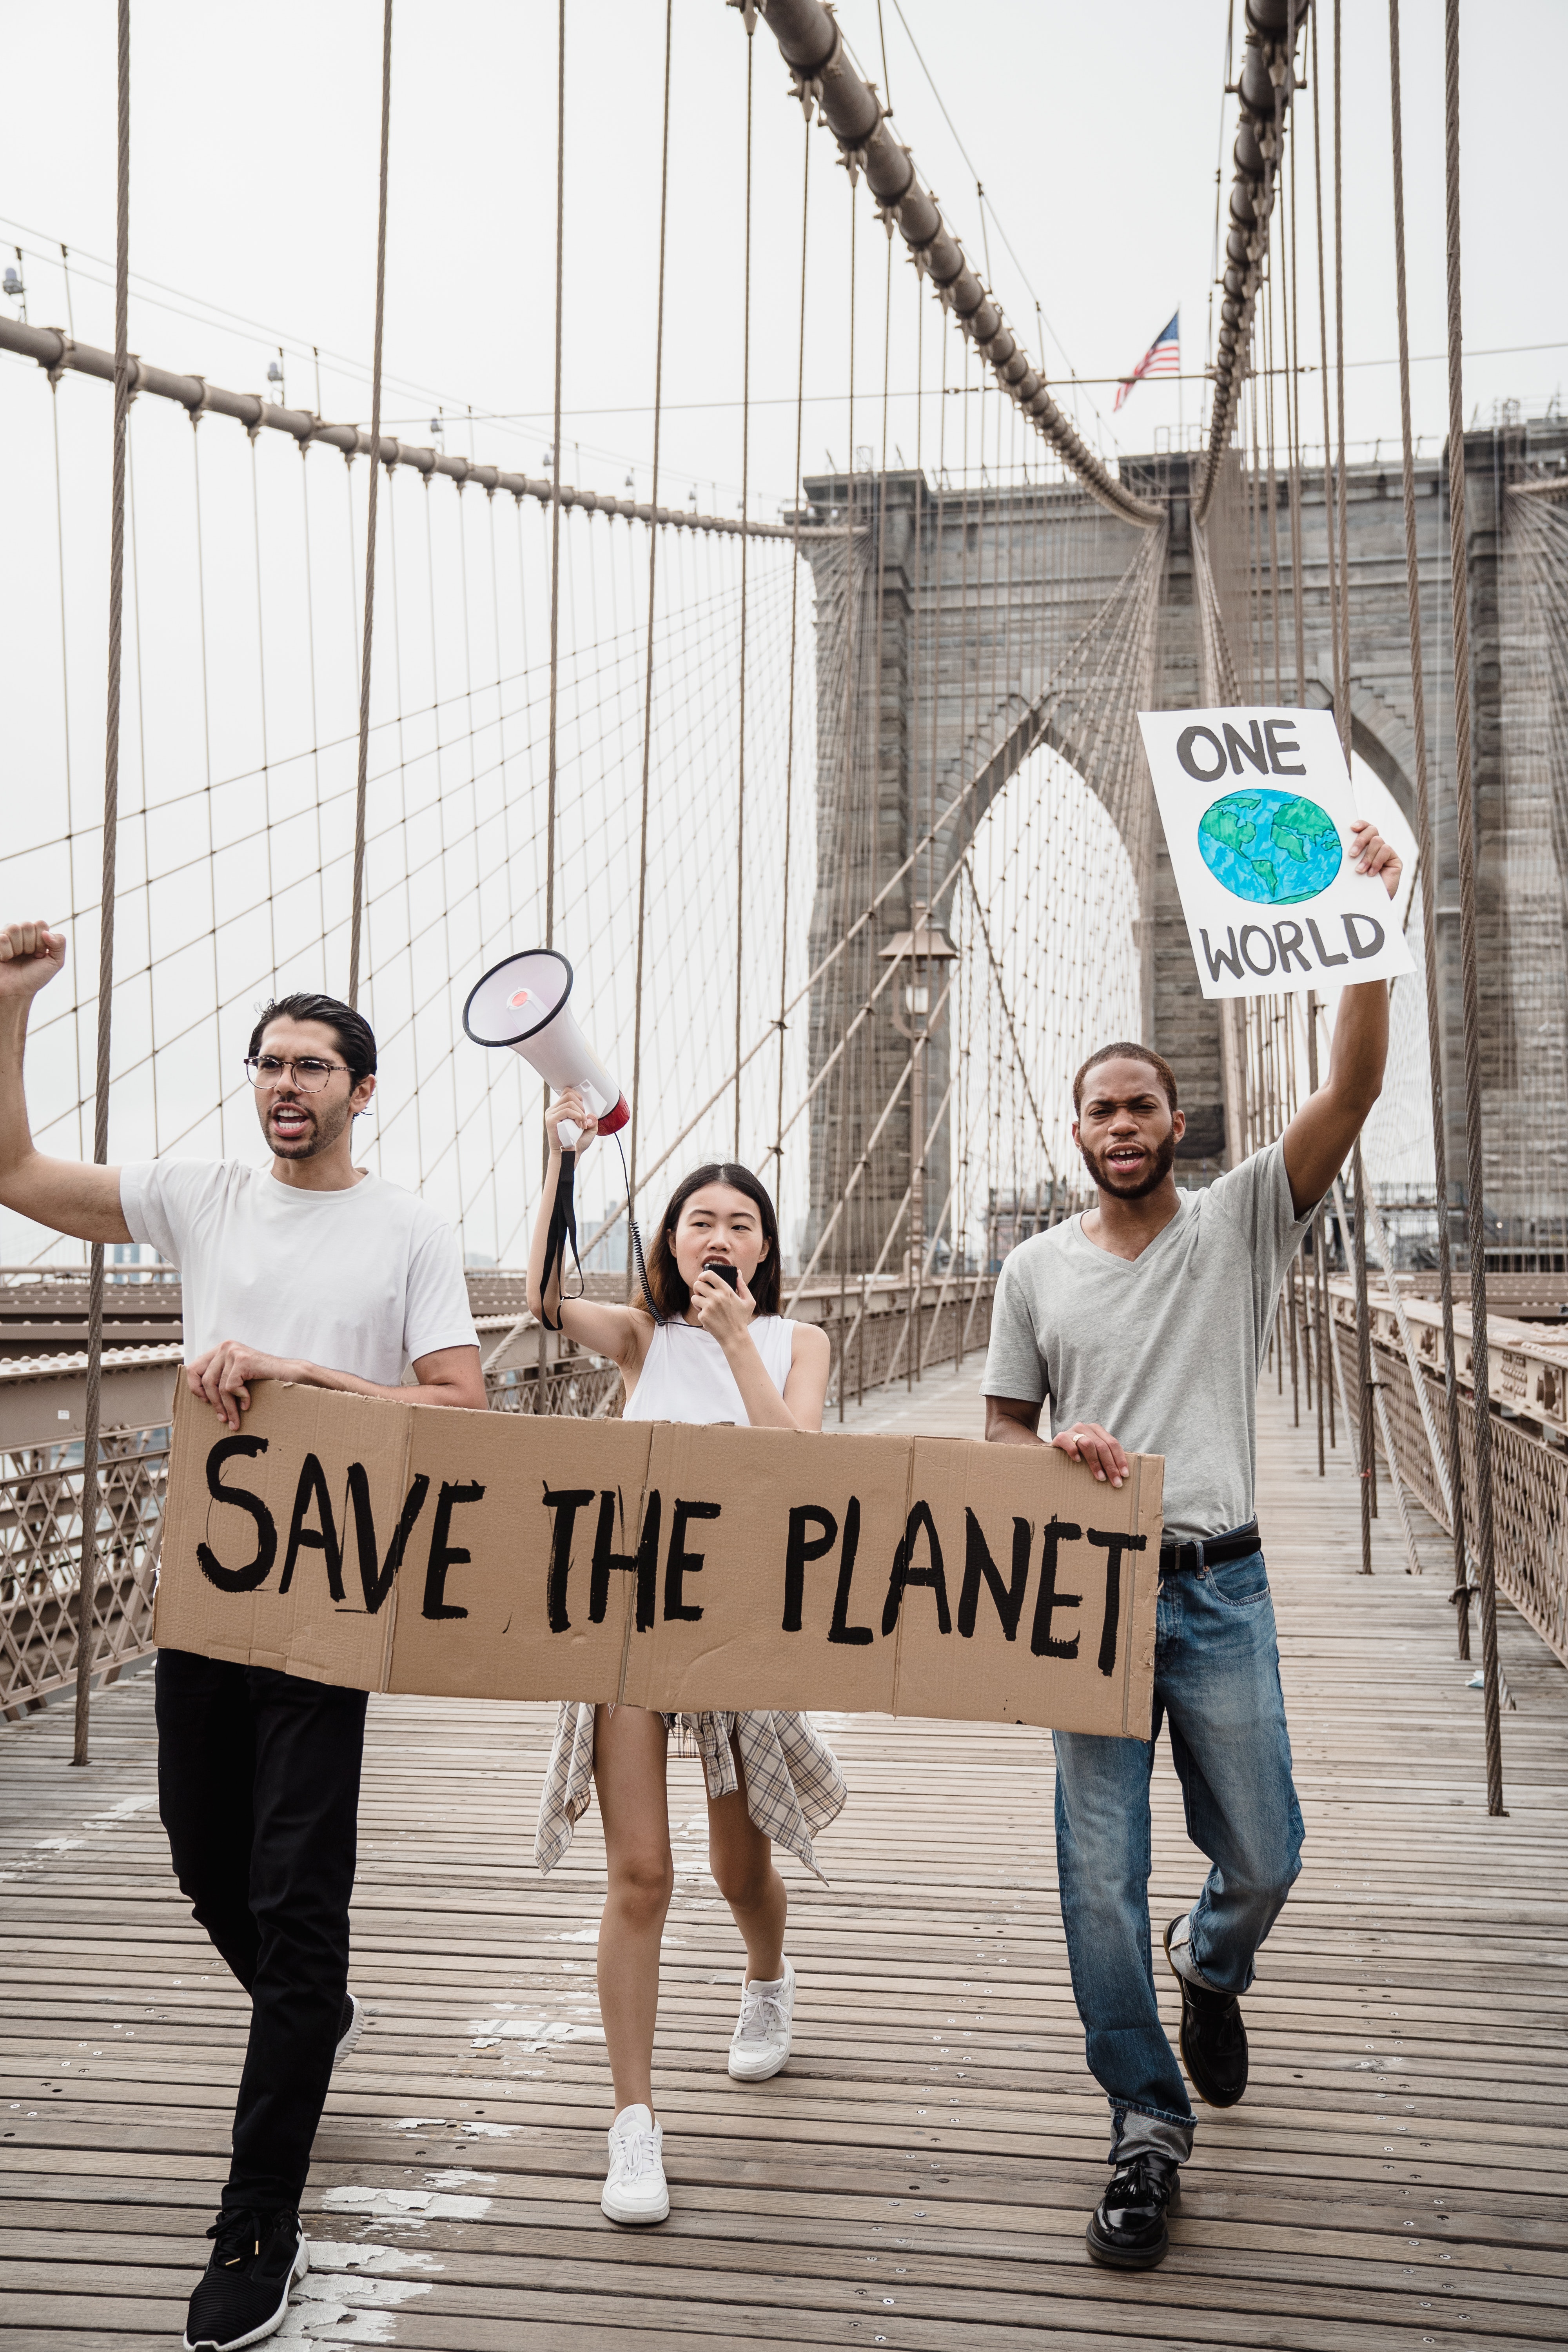 Dos hombres y una mujer caminando sobre un puente con carteles a favor de salvar y cuidar el planeta